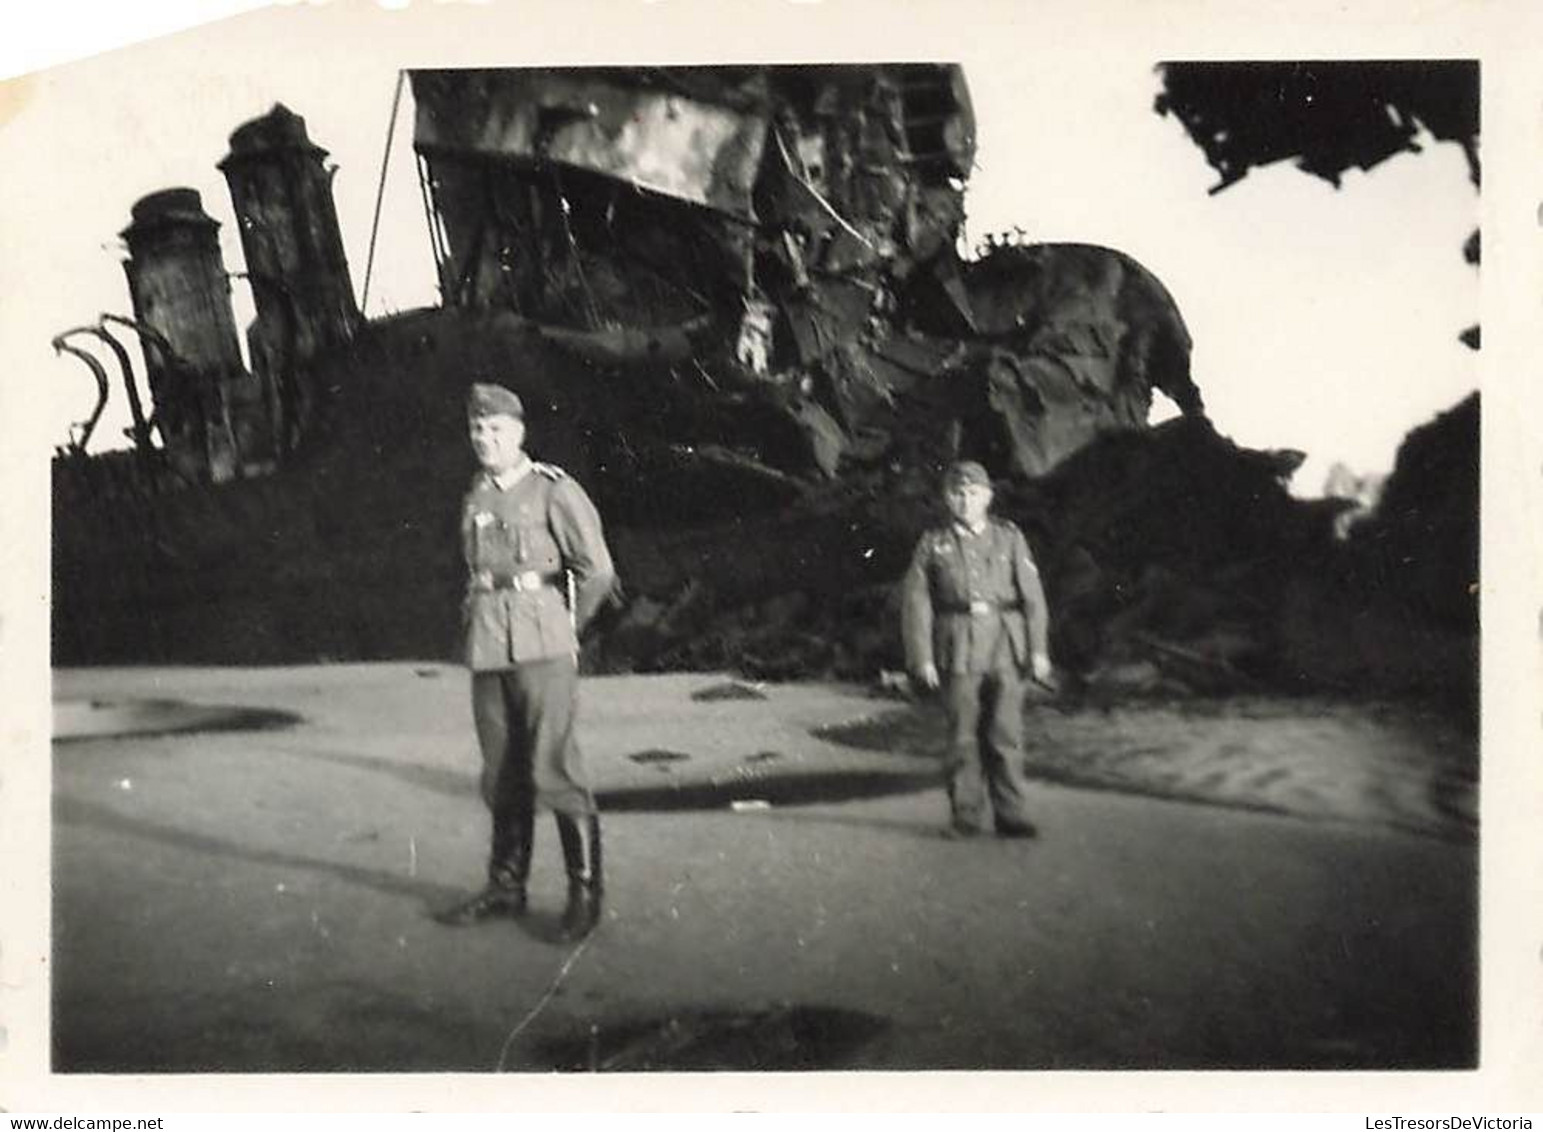 Lot de 32 petites photographies de soldats allemands à dunkerque - épave - bateau echoué - guerre -